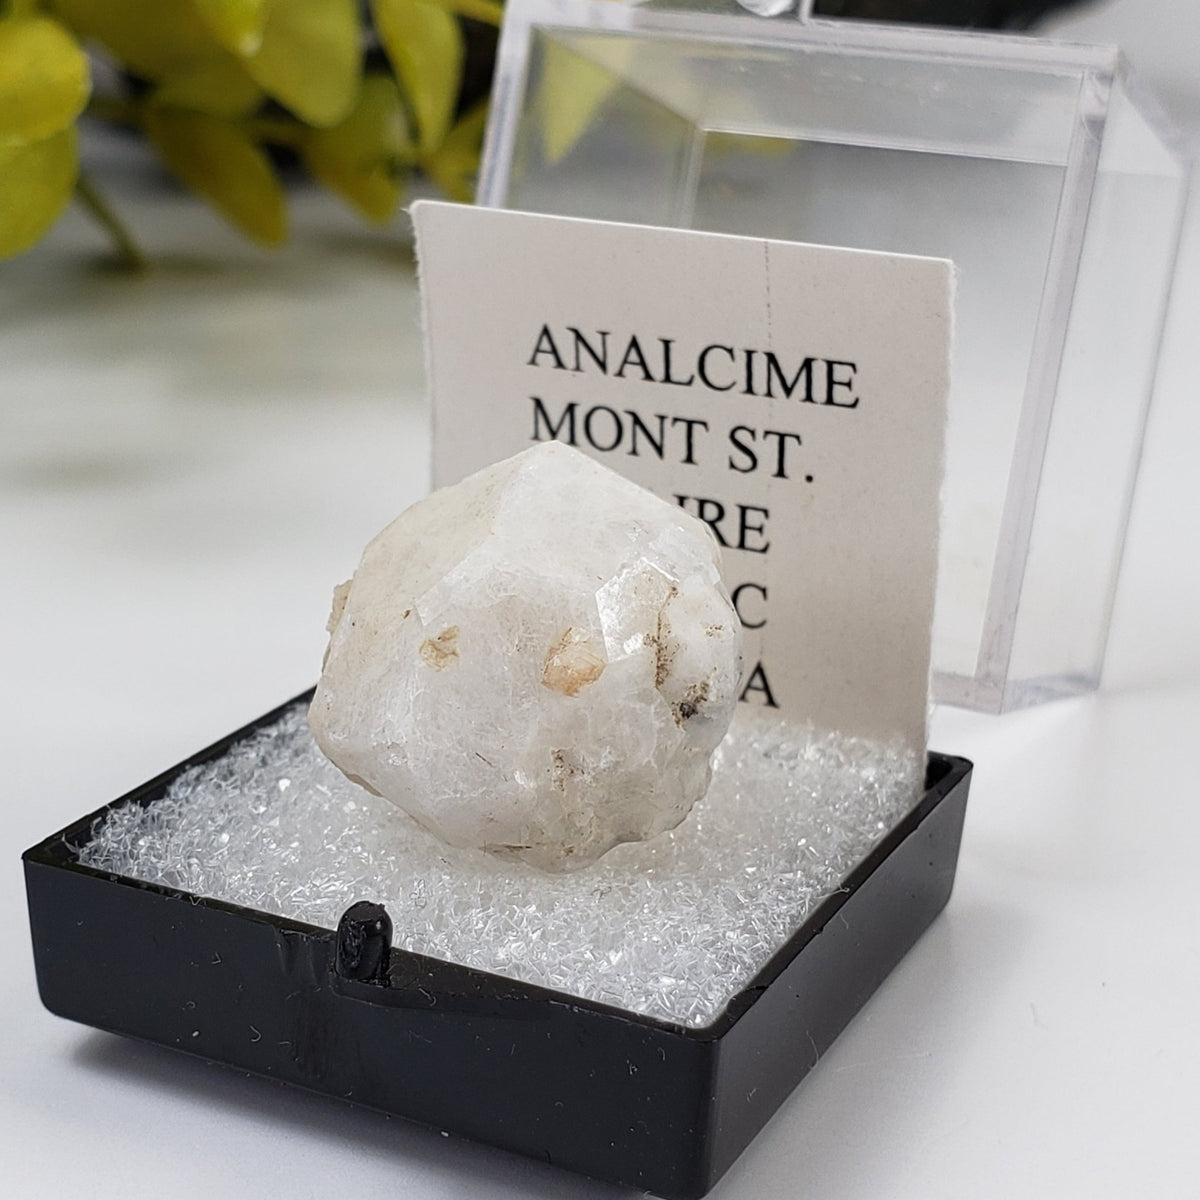 Analcime Crystal | Perky Box Thumbnail Specimen | Poudrette Quarry, Mont Saint-Hilaire | Canagem.com